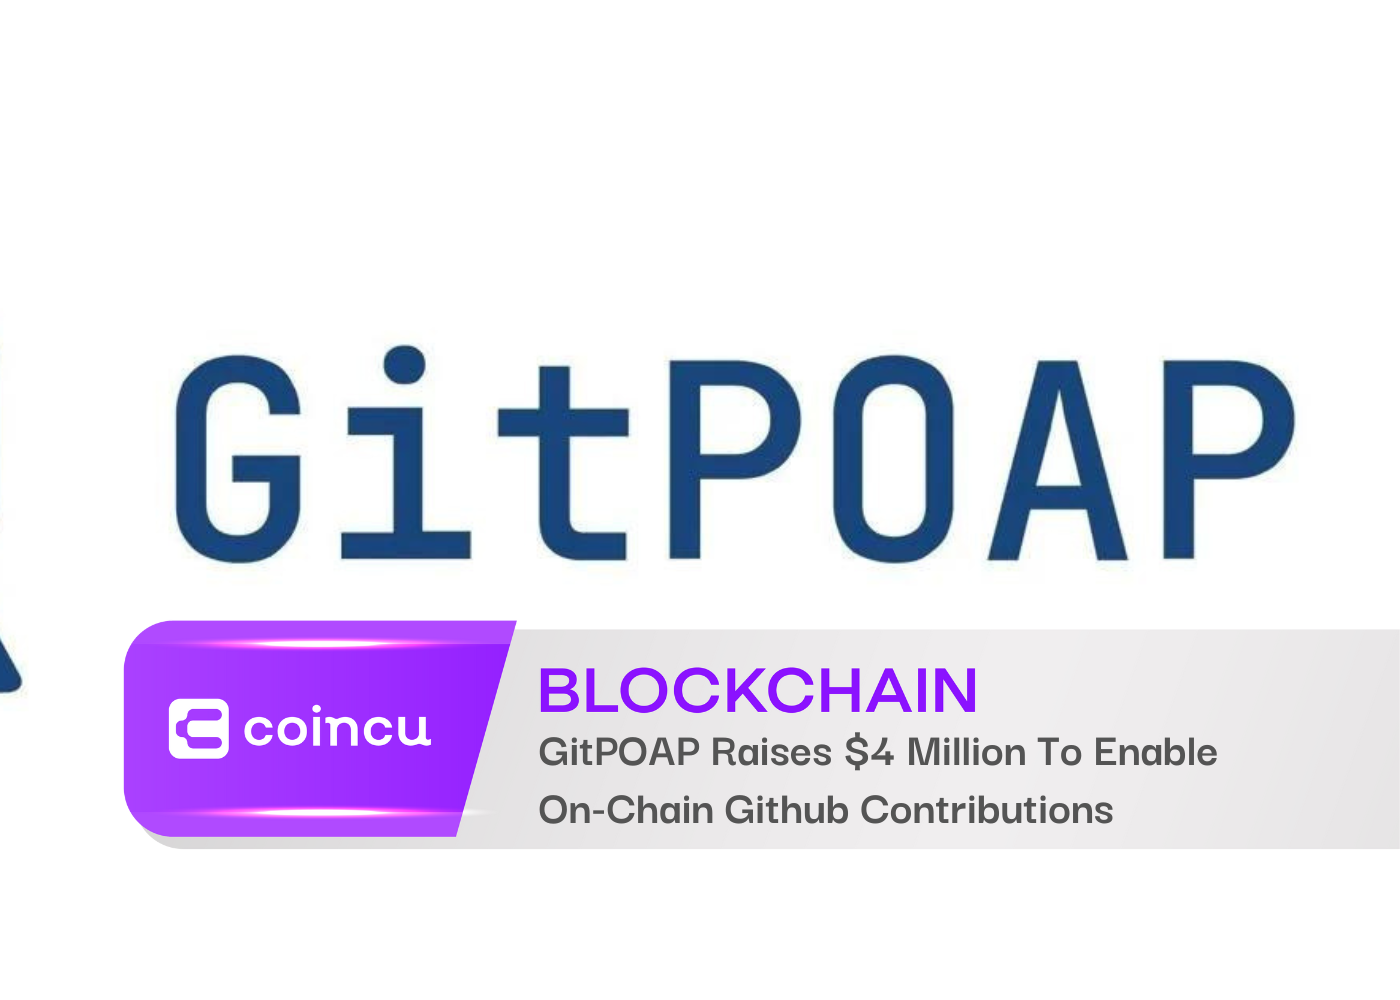 GitPOAP Raises 4 Million To Enable